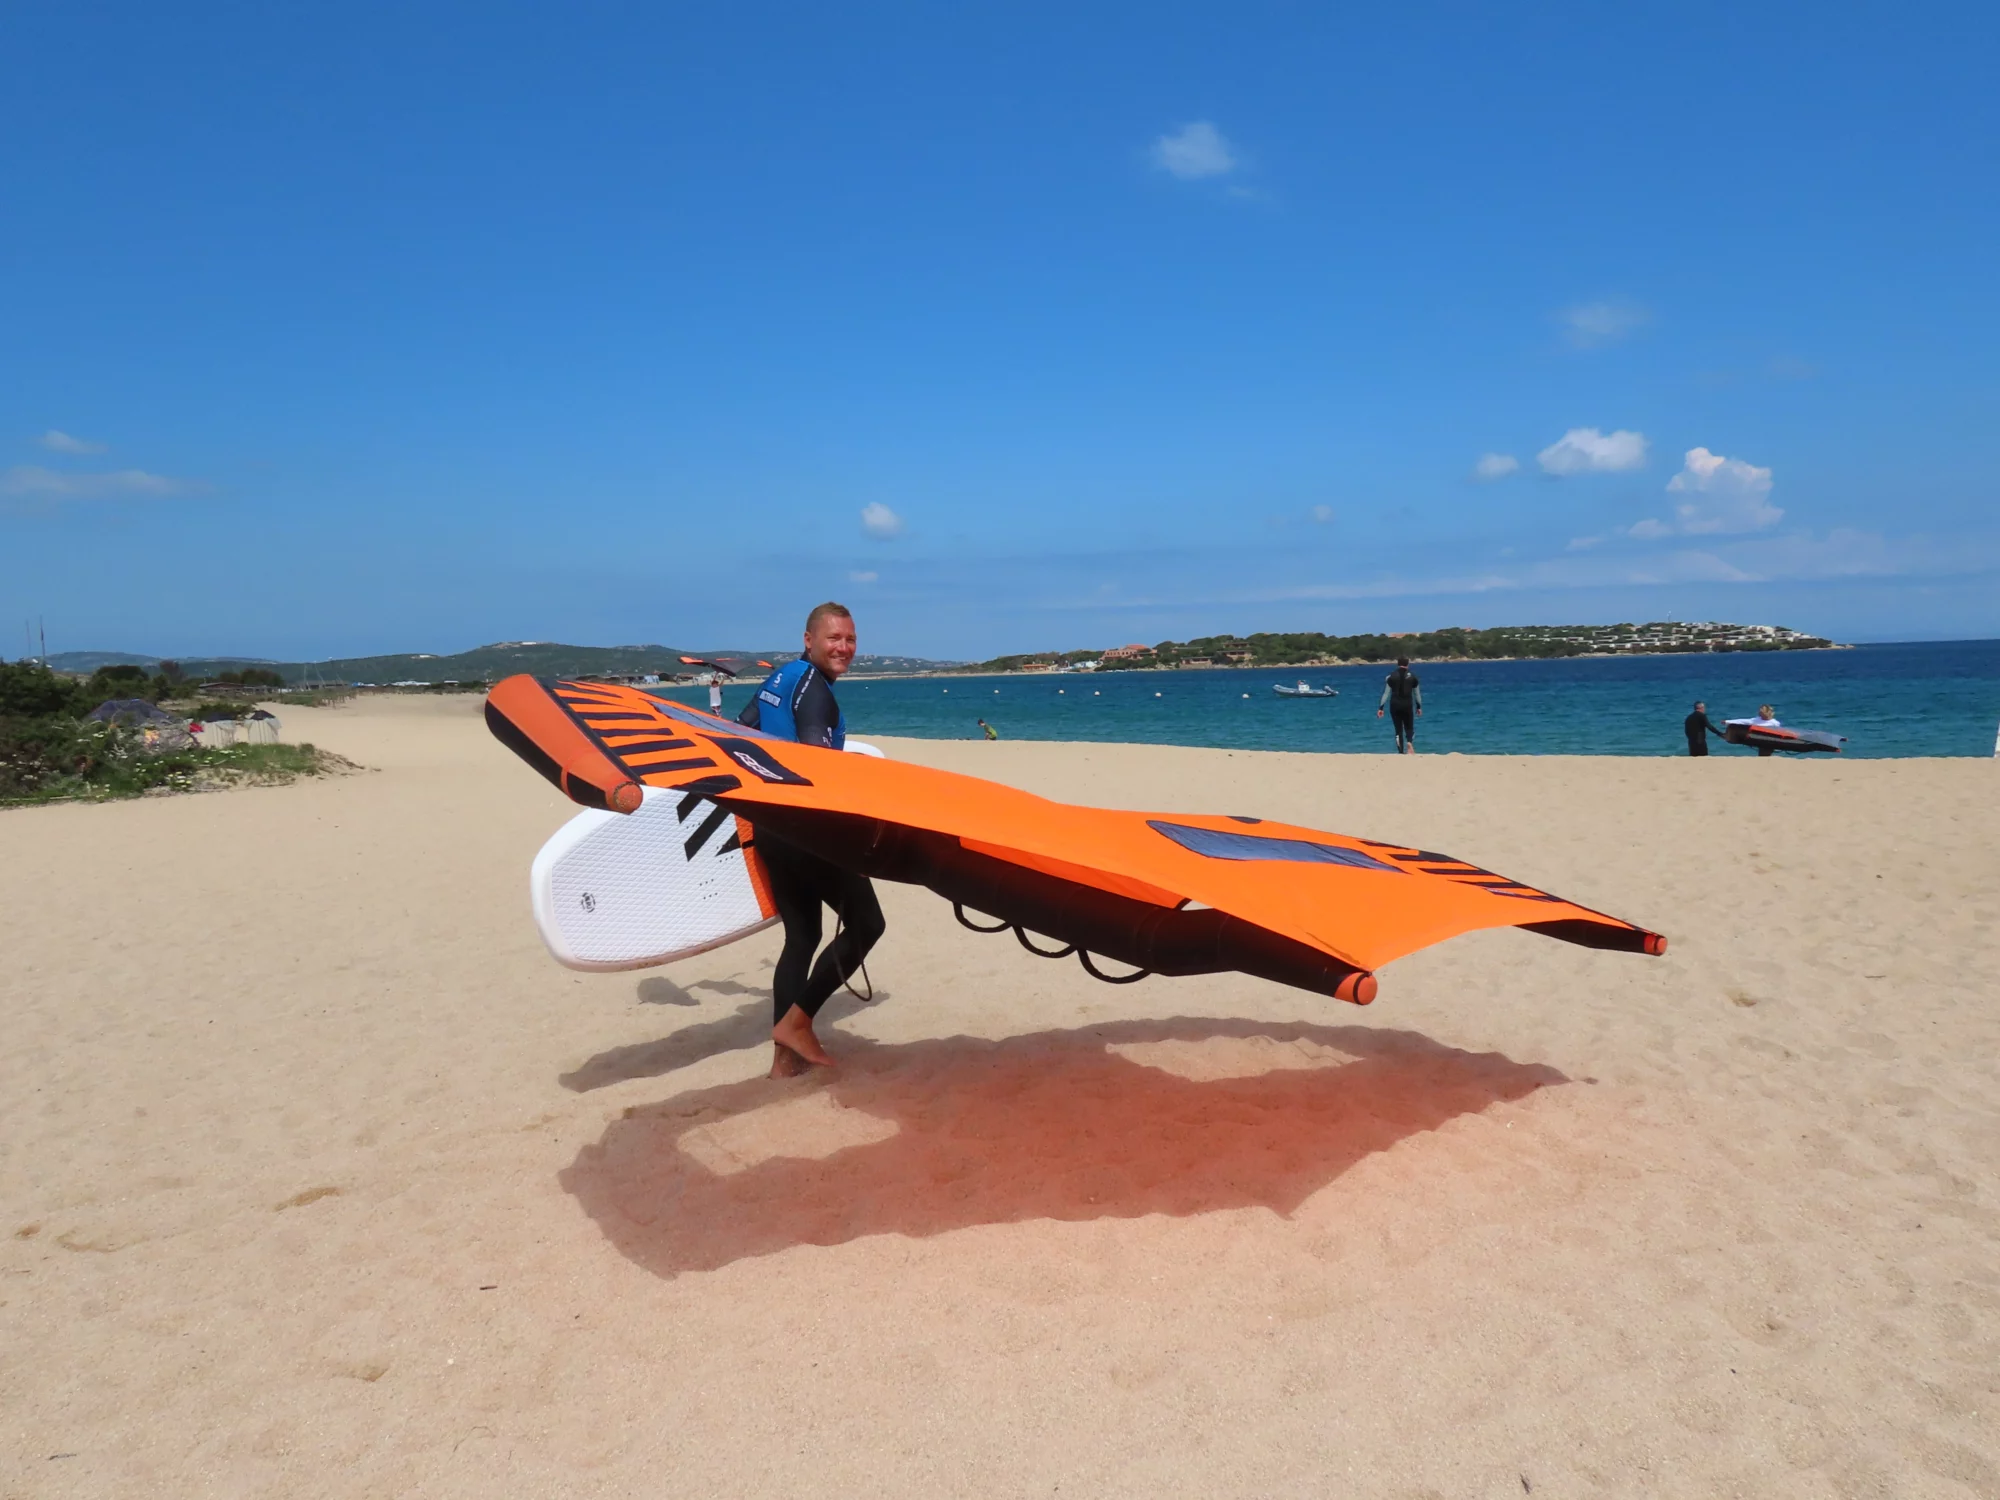 Sardynia-Porto-Pollo-wyjazdy-windsurfingowe_-wingfoilowe_-kitesurfignowe-z-FunSurf-SurfTravel-4